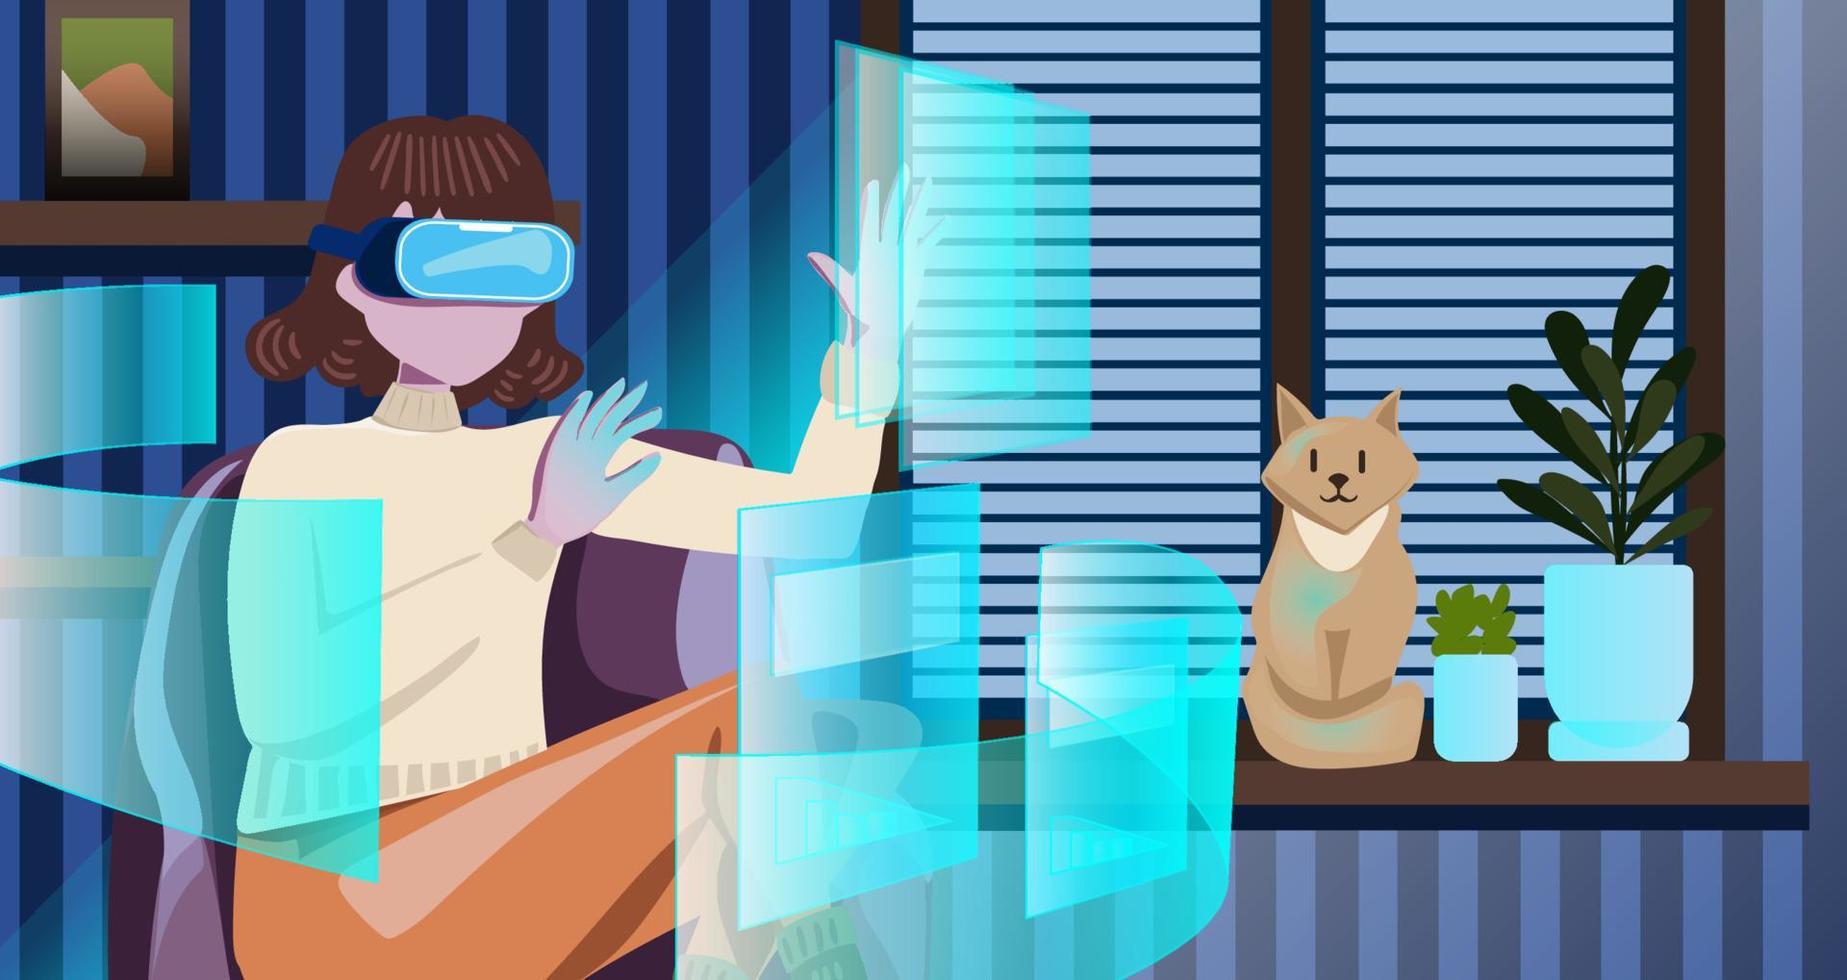 metaverse digitaal cyber wereld technologie, vrouw Holding virtueel realiteit bril omringd met futuristische koppel 3d hologram gegevens, vrouw in een knus kamer met katten en planten. vector illustratie.